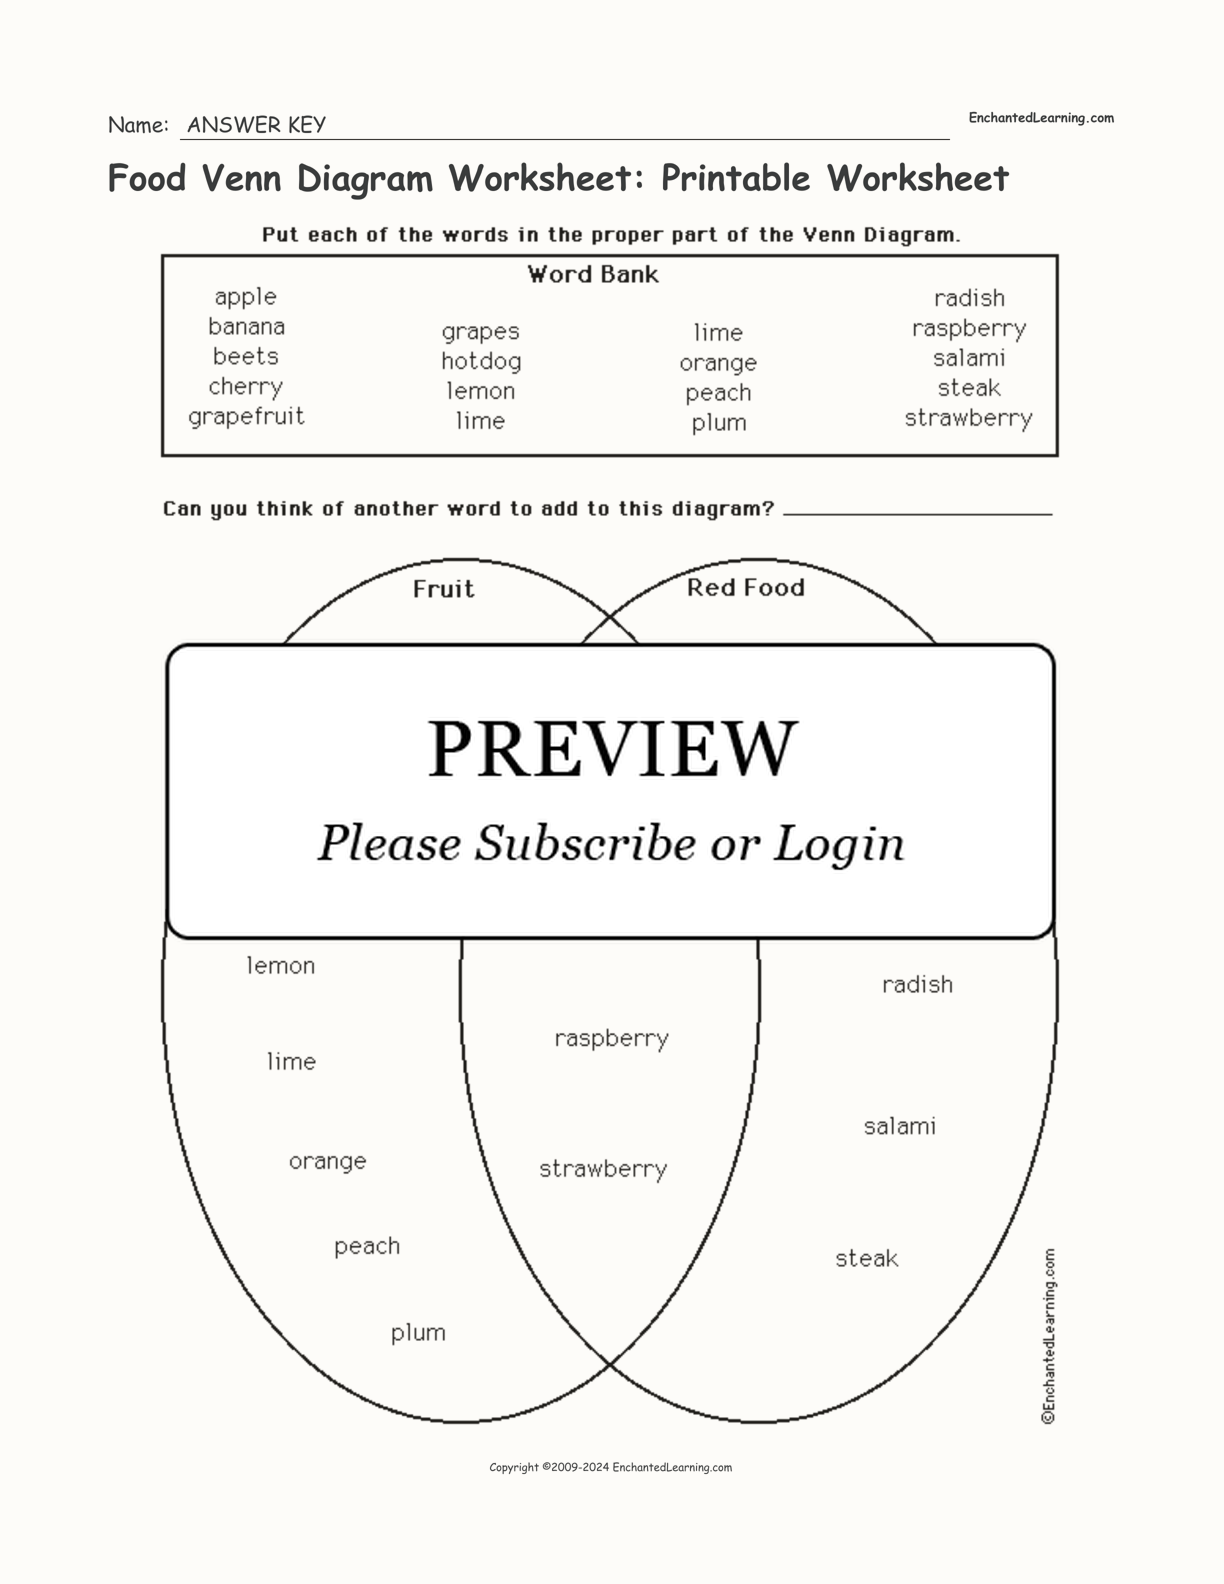 Food Venn Diagram Worksheet: Printable Worksheet interactive worksheet page 2